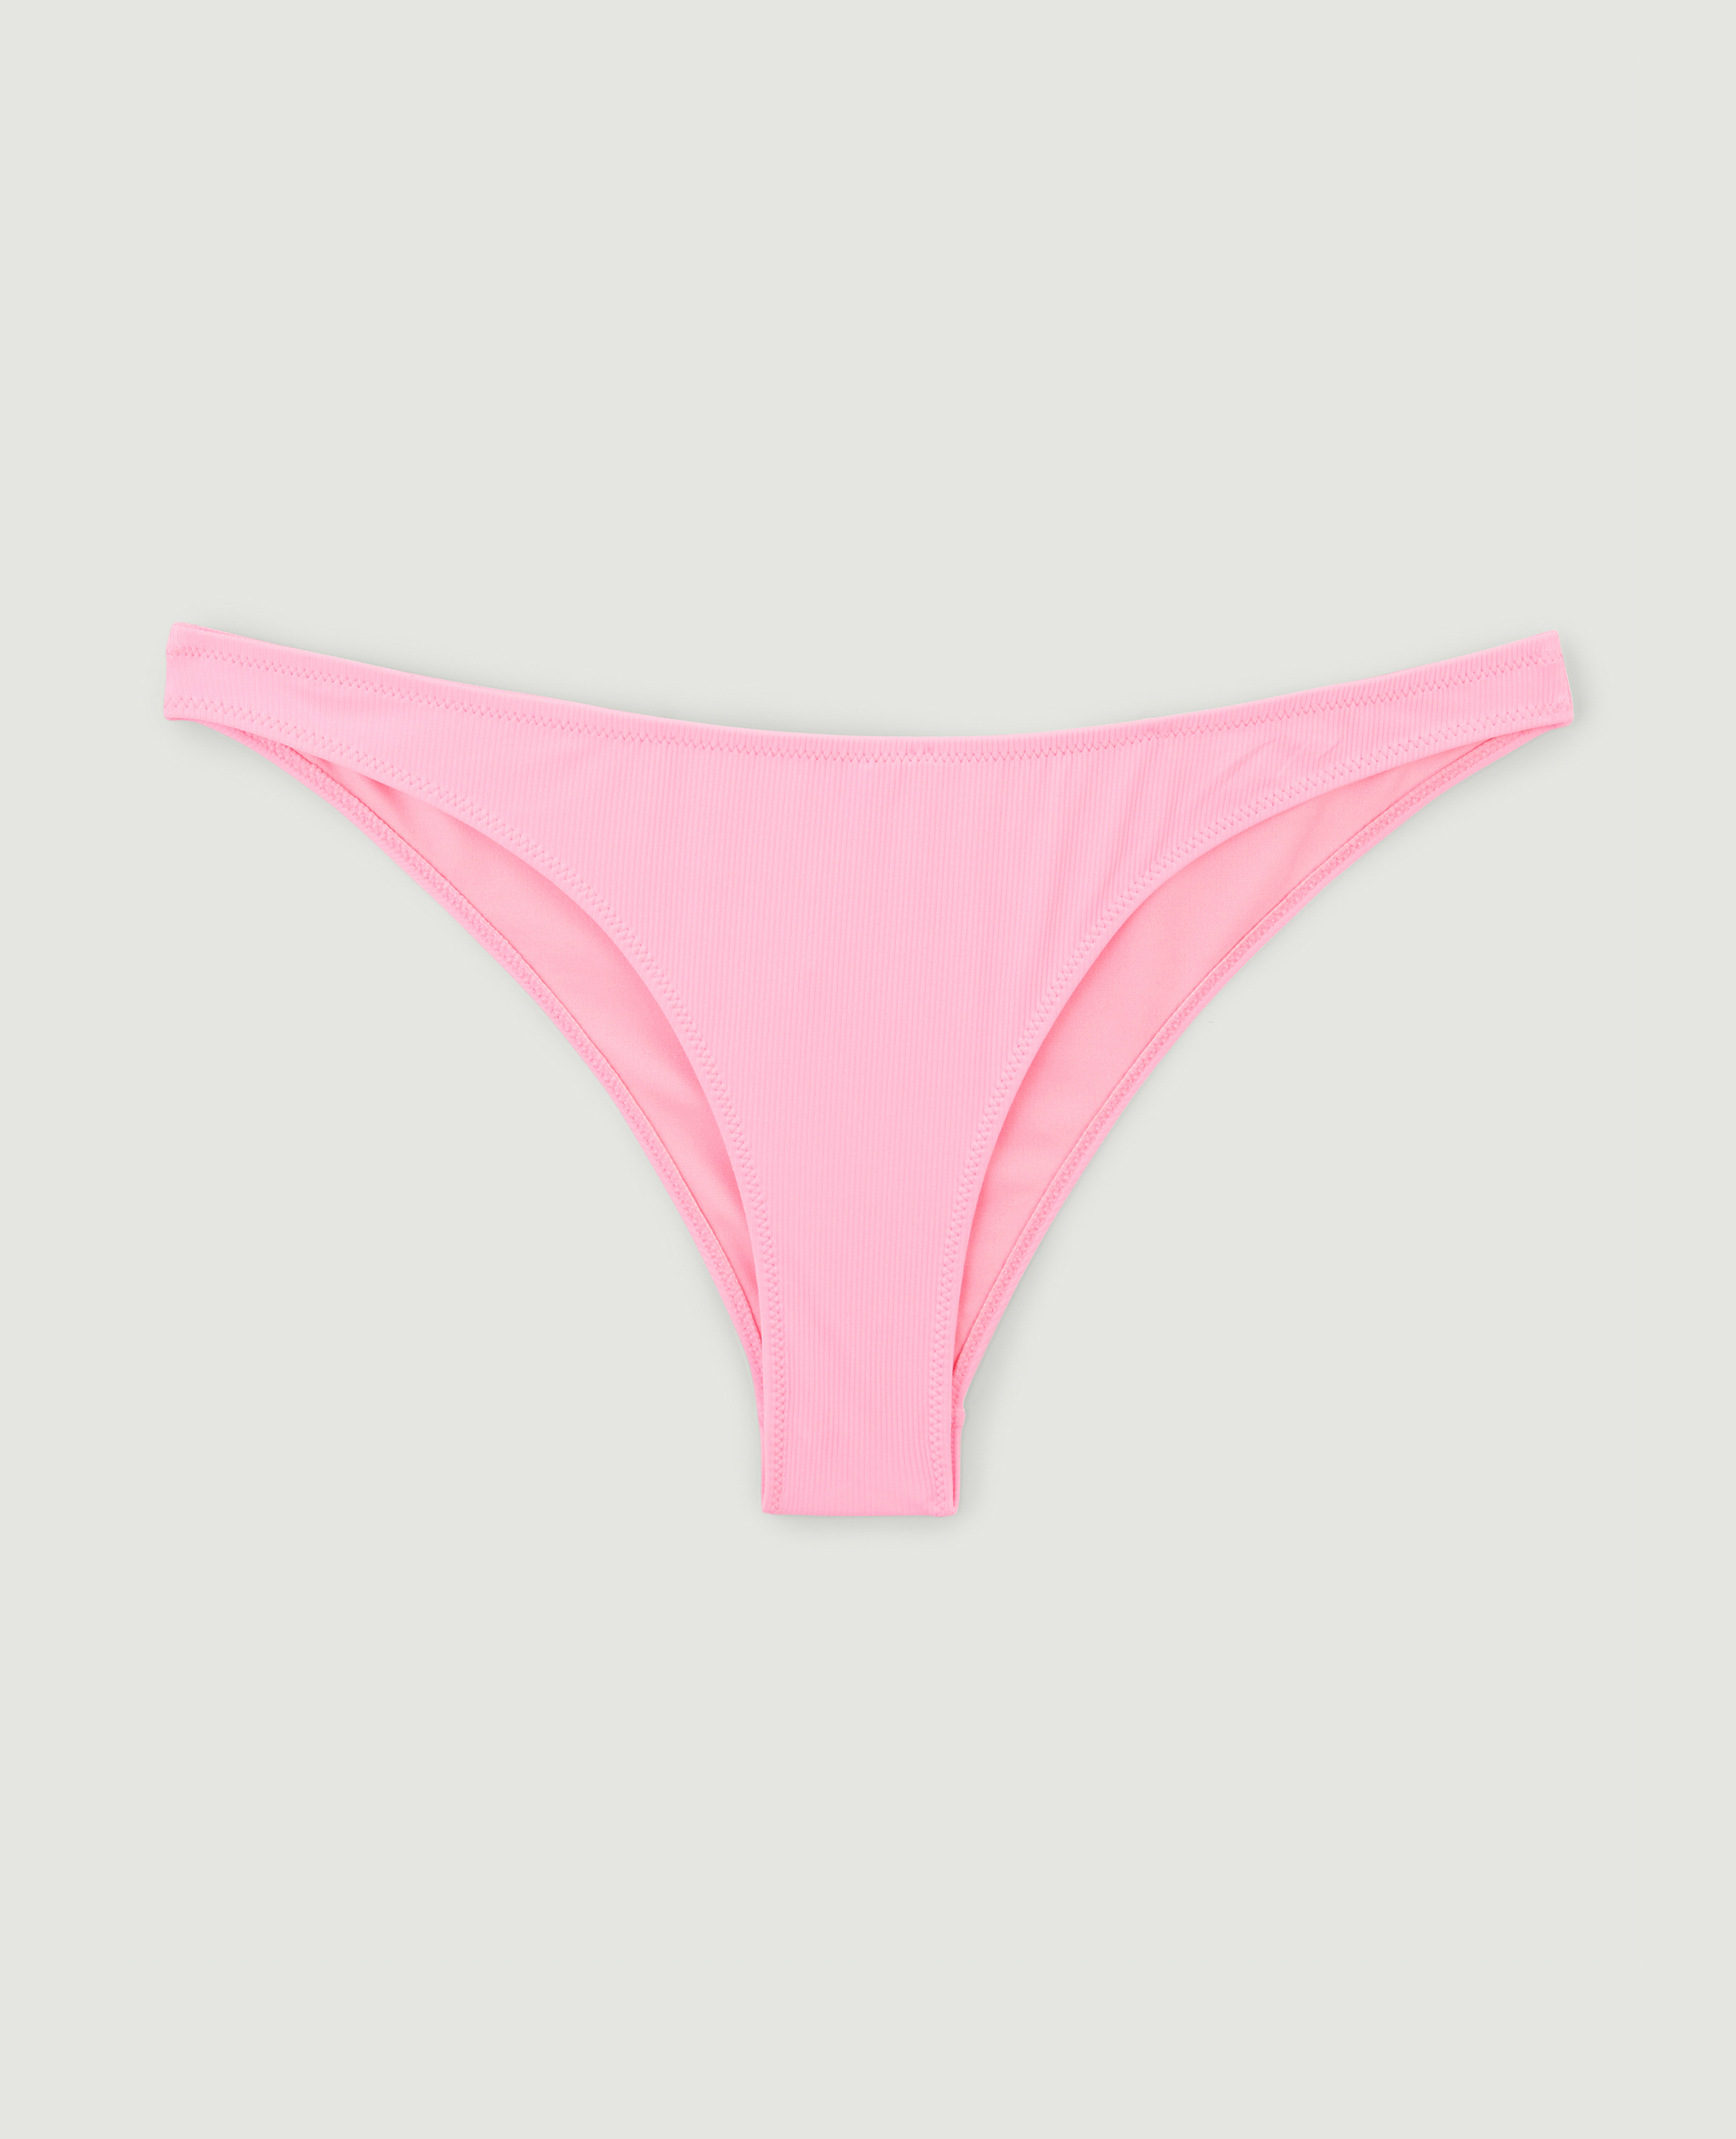 Bas de maillot de bain culotte rose - Pimkie